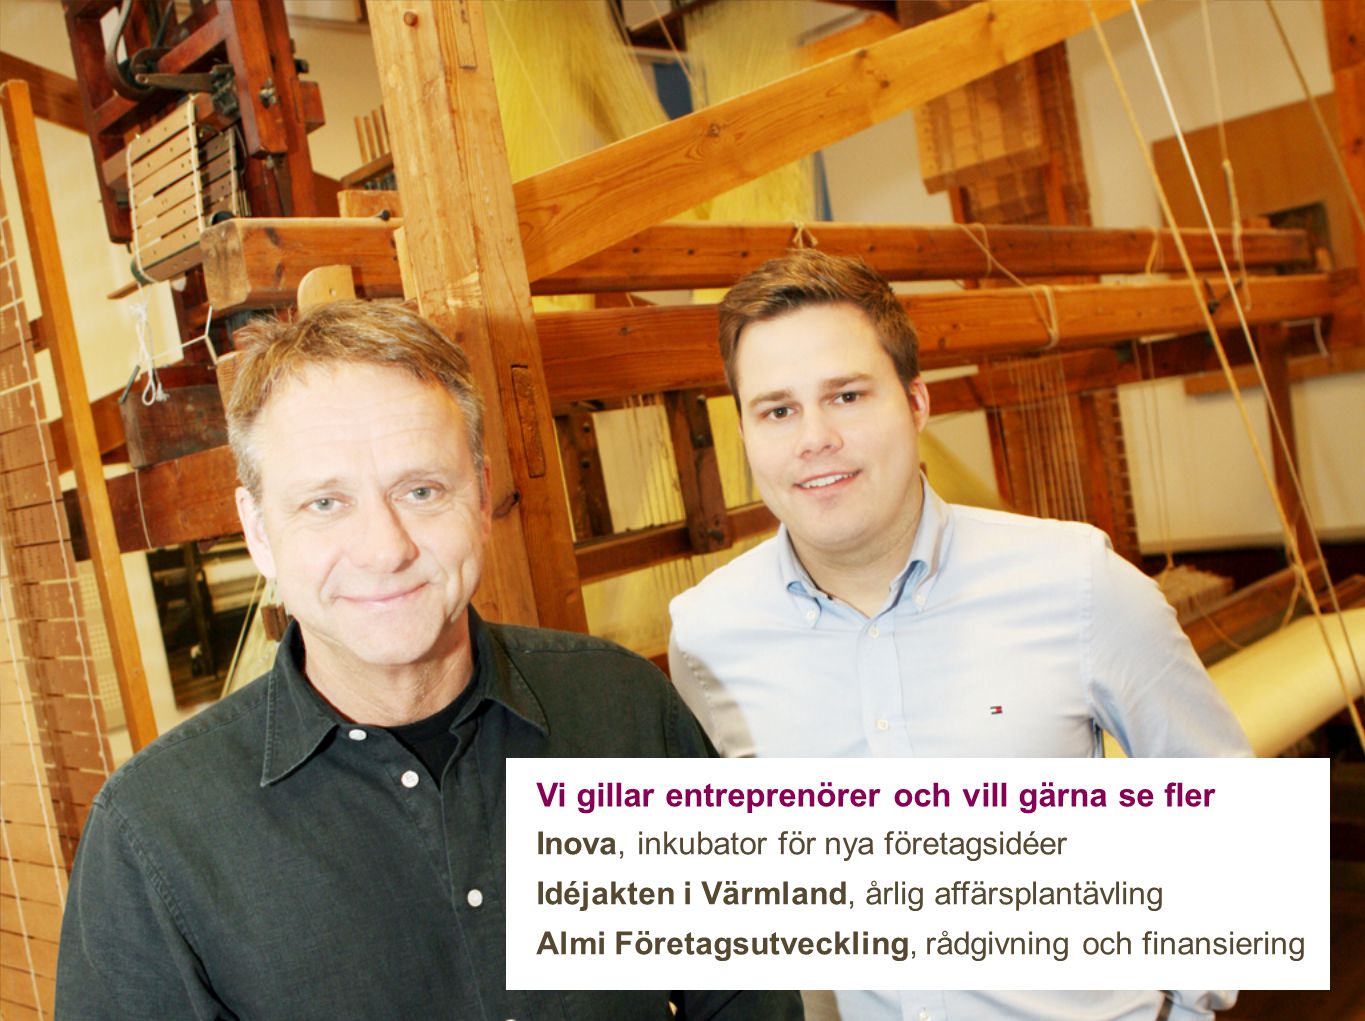 Vi gillar entreprenörer och vill gärna se fler Inova, inkubator för nya företagsidéer Idéjakten i Värmland, årlig affärsplantävling Almi Företagsutveckling, rådgivning och finansiering